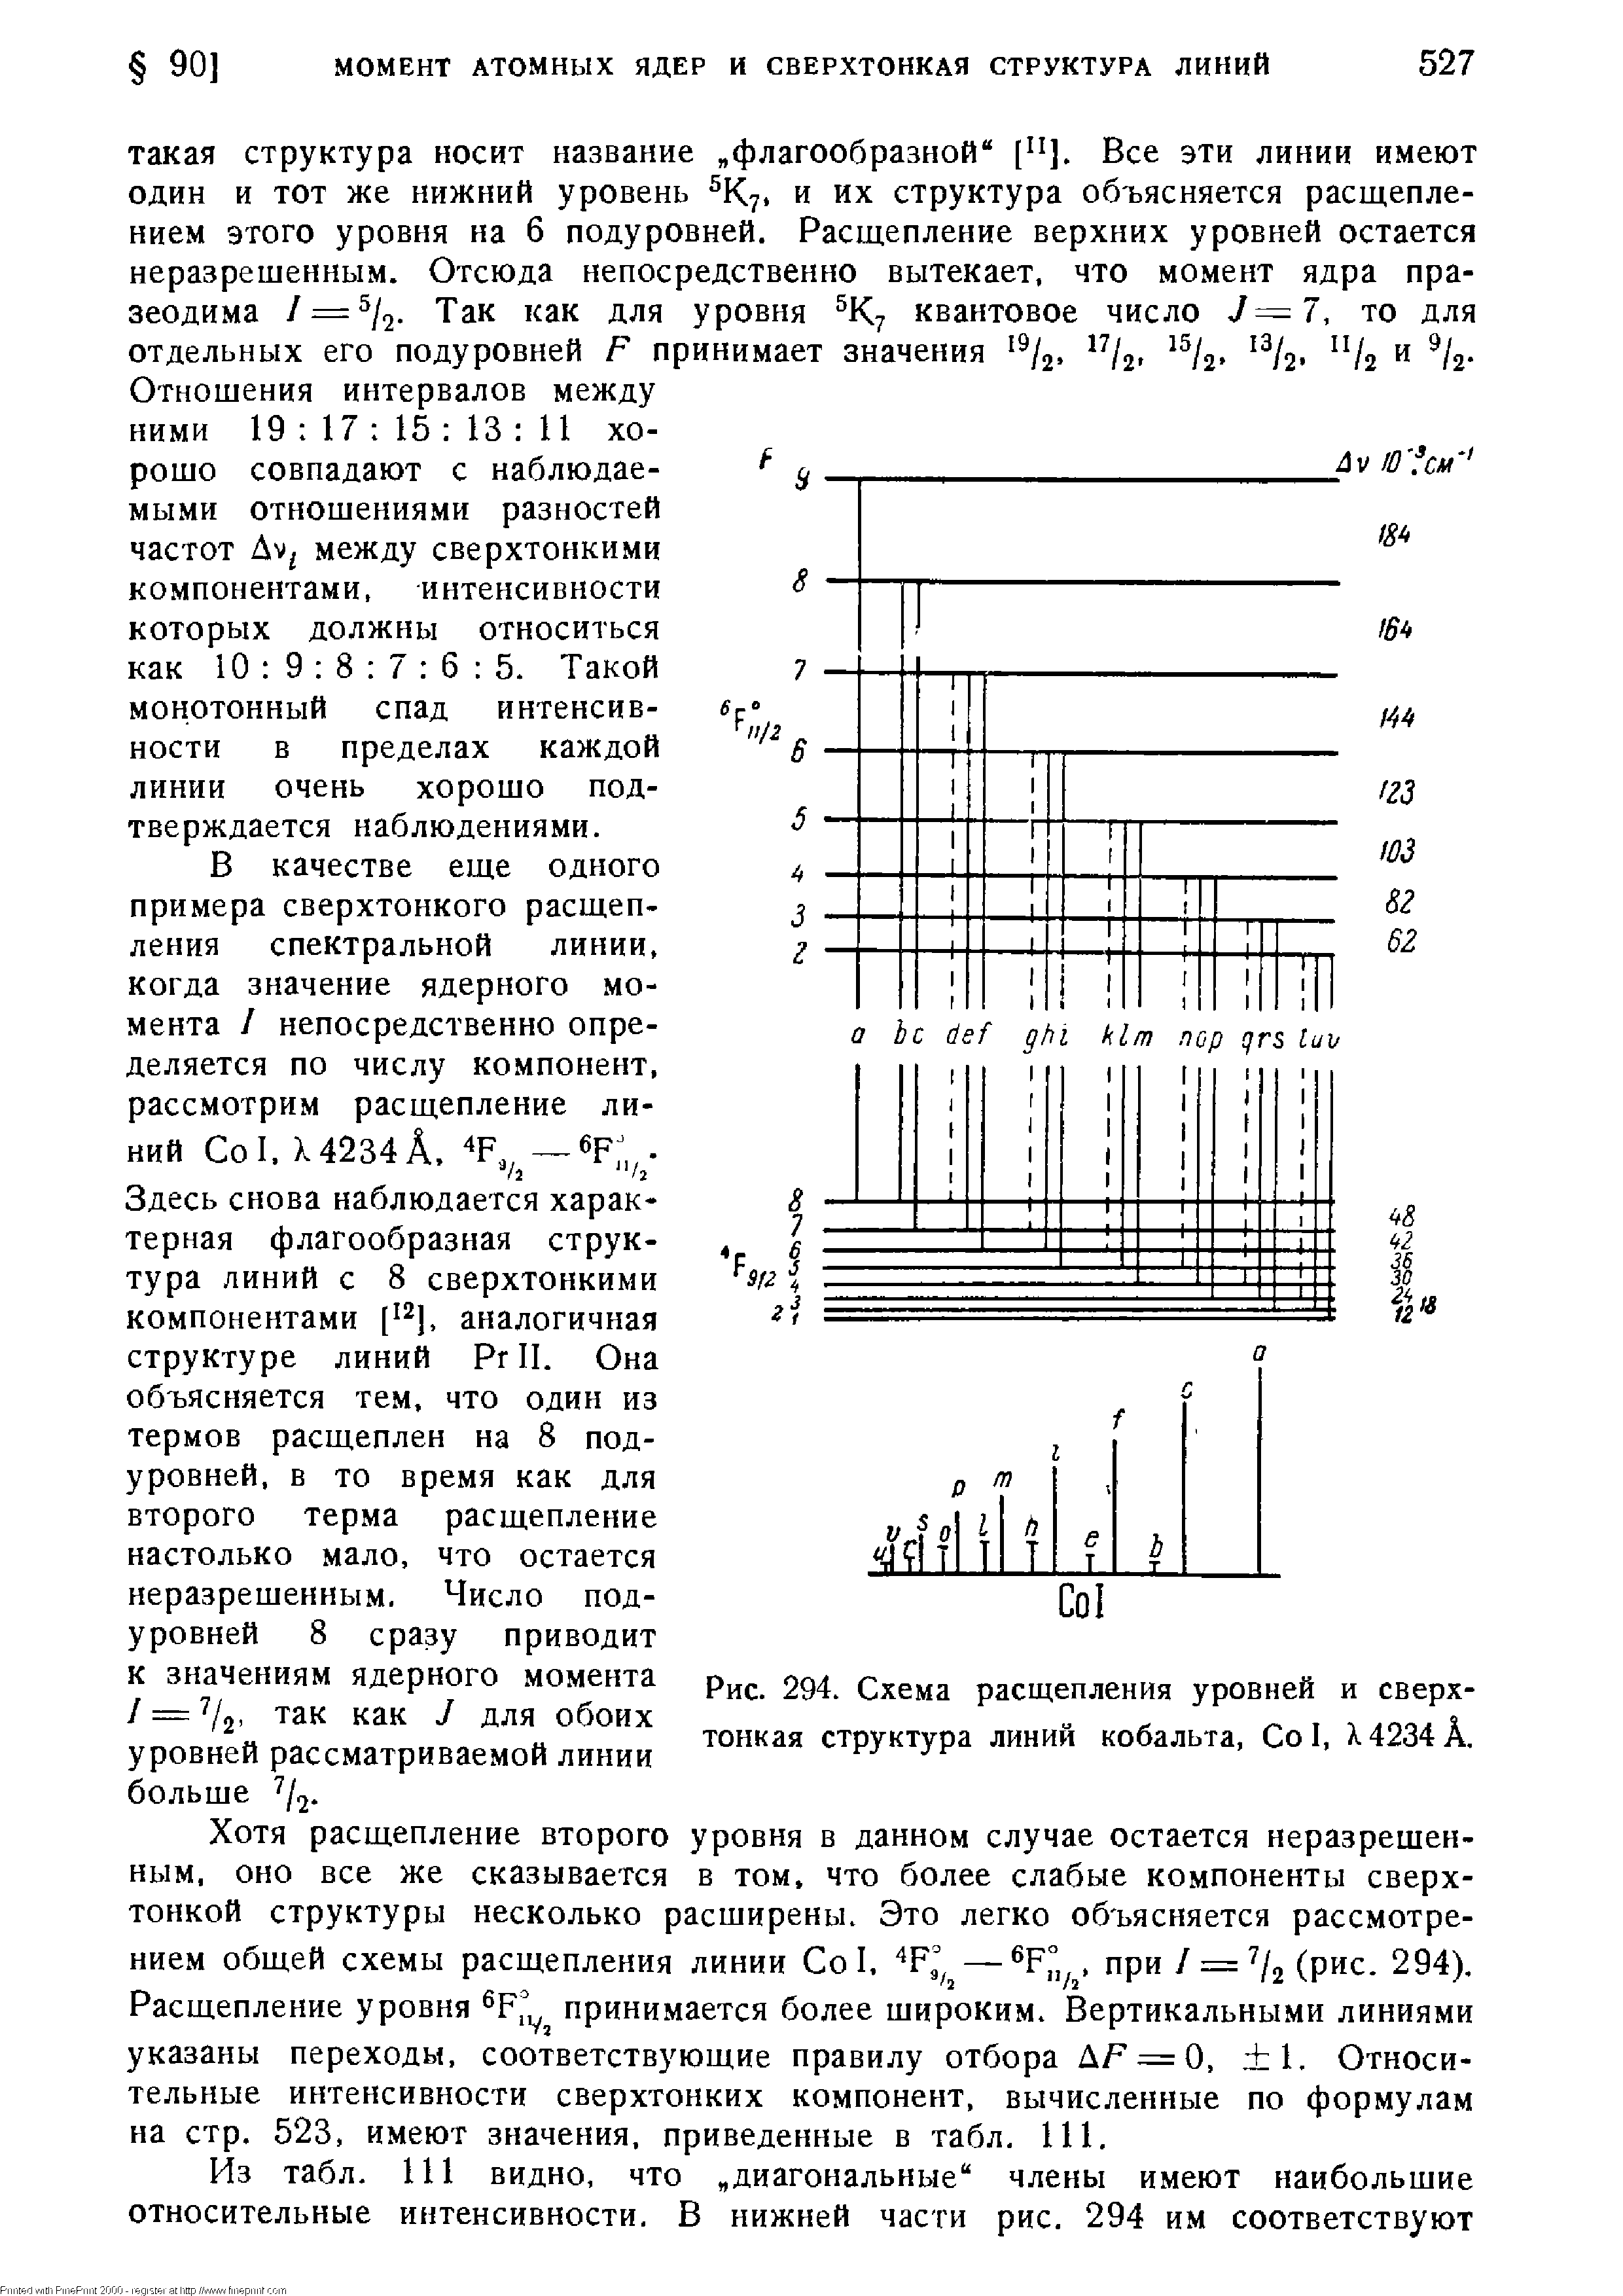 Рис. 294. Схема расщепления уровней и сверхтонкая структура линий кобальта, Со I, 4234 А.
